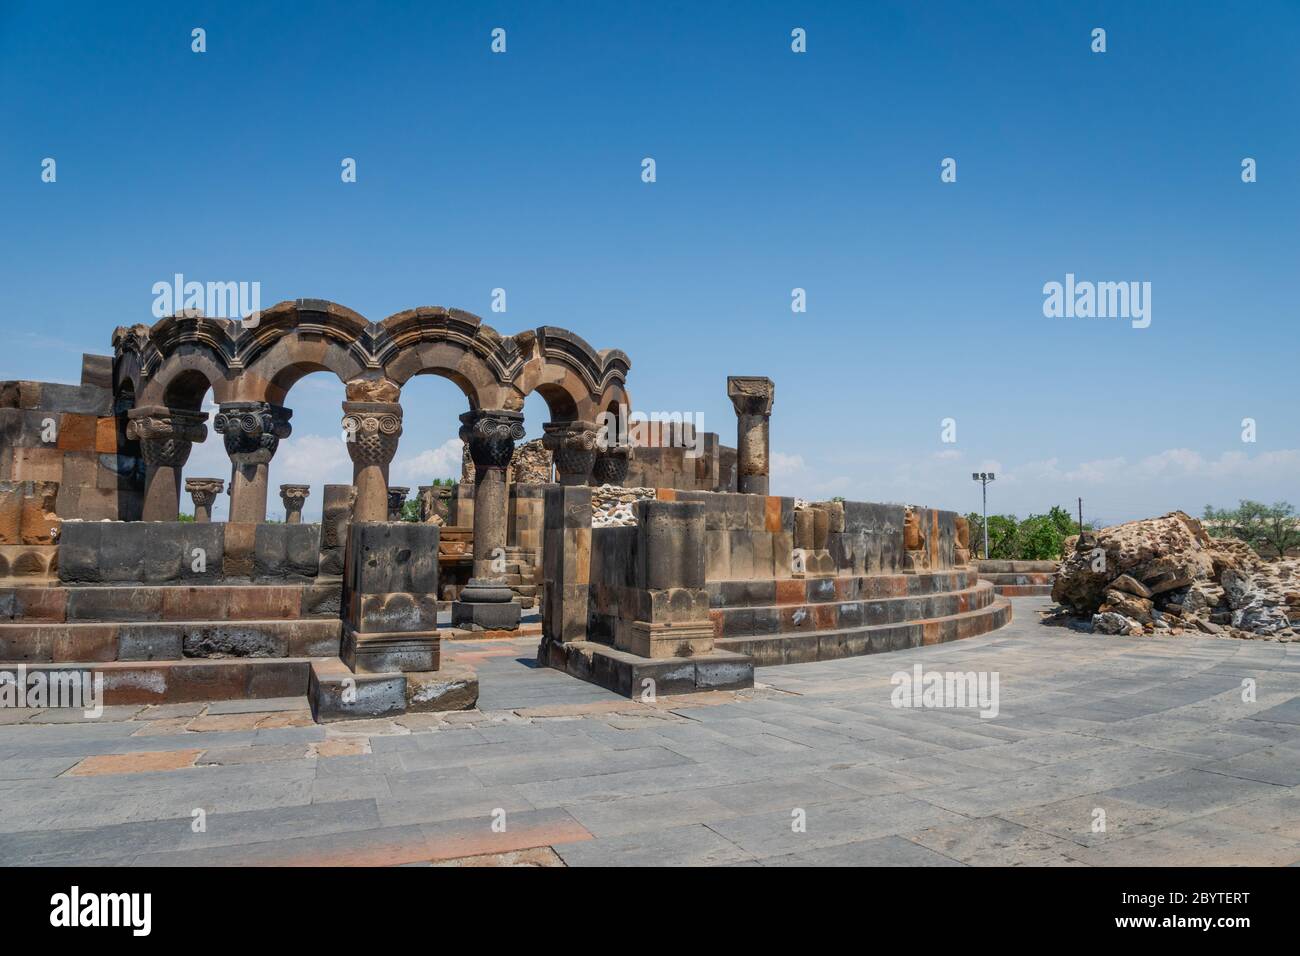 Zvartnots Cathedral ruin near Yerevan, Armenia. Zvartnots Cathedral is a 7th-century centrally planned aisled tetraconch type Armenian cathedral Stock Photo